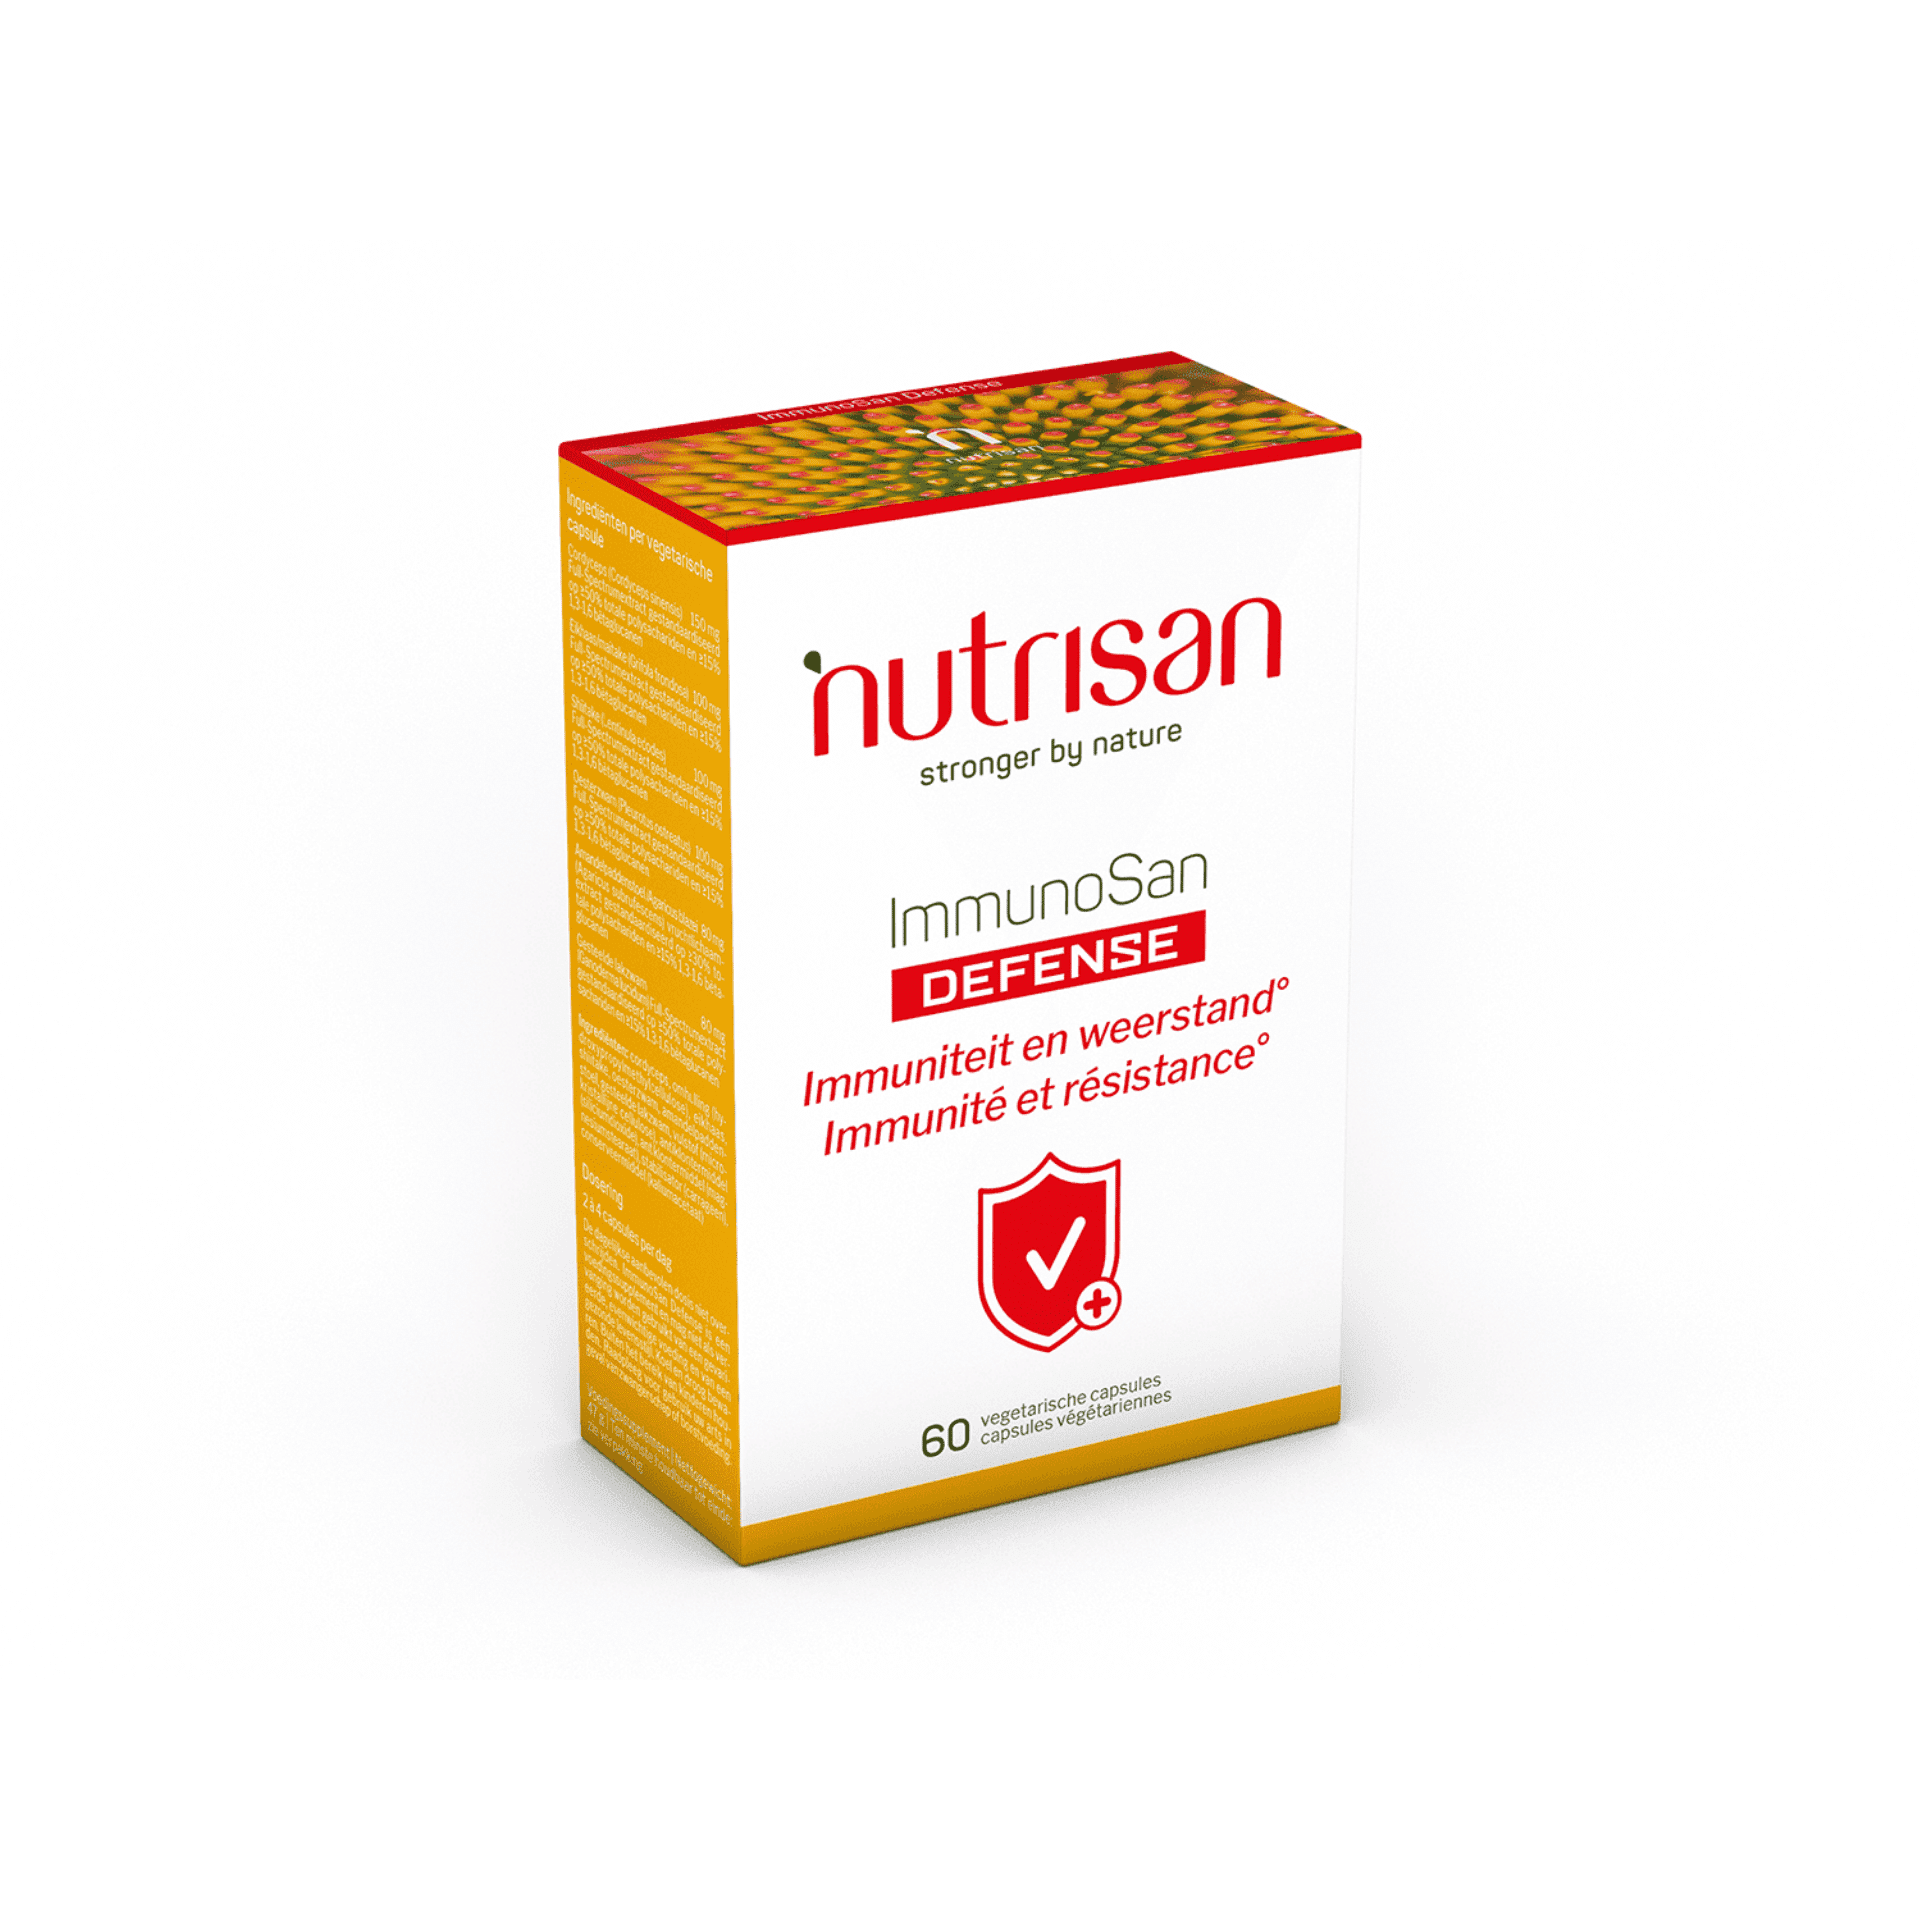 Nutrisan ImmunoSan Defense 60 capsules